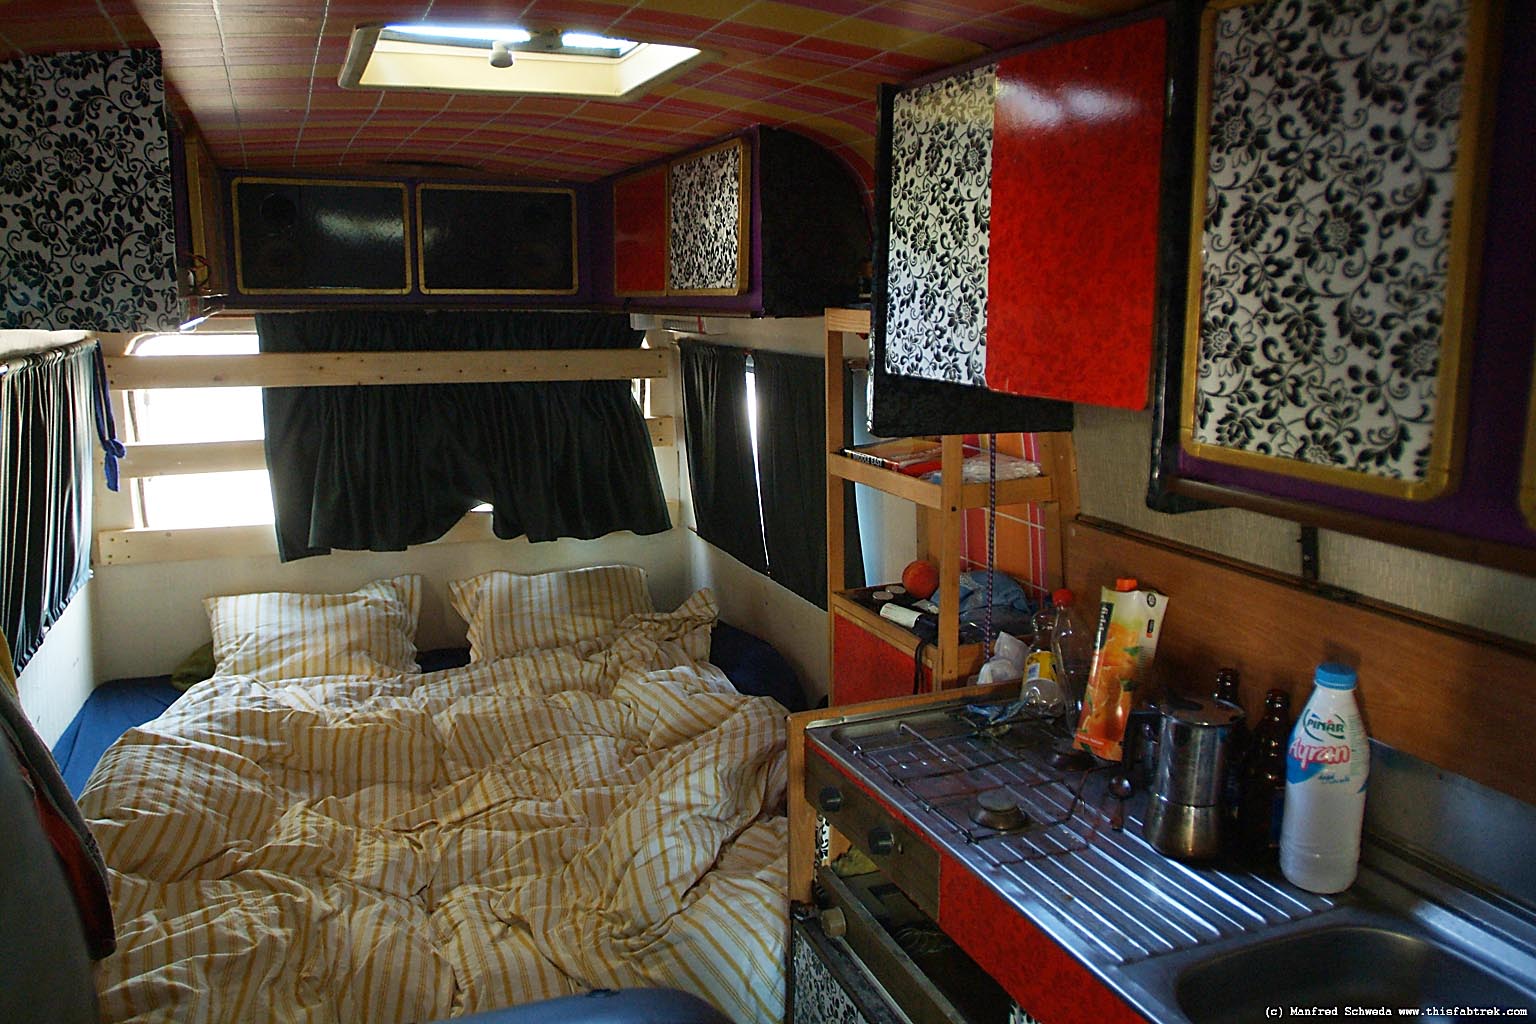 Inside the hippie van